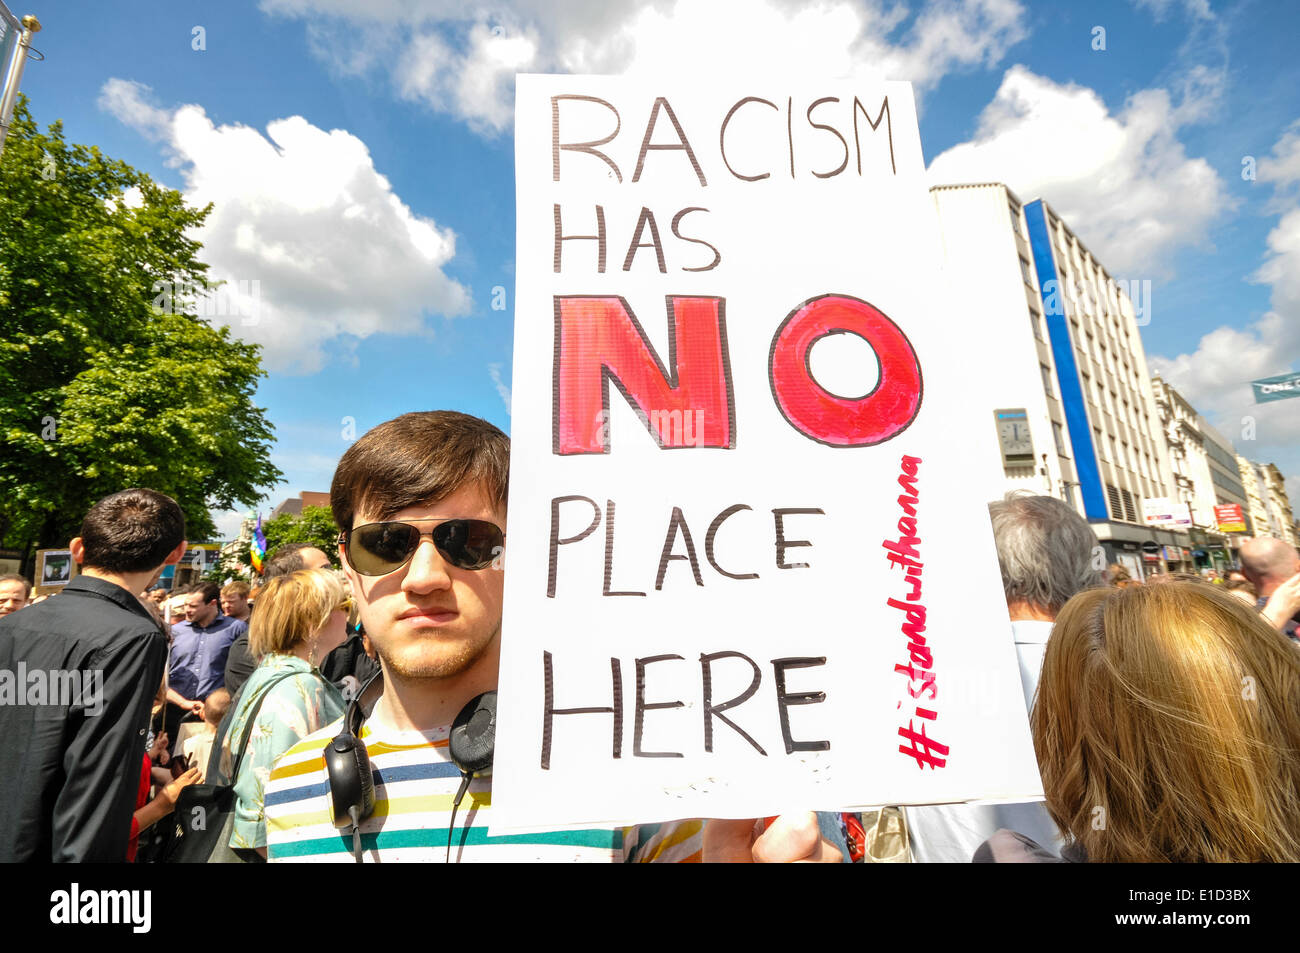 Belfast, Irlande du Nord. 31 mai 2014 - panneau "Le racisme n'a pas sa place ici". Des milliers de personnes pour un anti-racisme manifestation tenue à l'appui d'Anna Lo MLA. Mme Lo avait menacé de quitter l'Irlande du Nord à cause de la quantité d'attaques racistes. Crédit : Stephen Barnes/Alamy Live News Banque D'Images